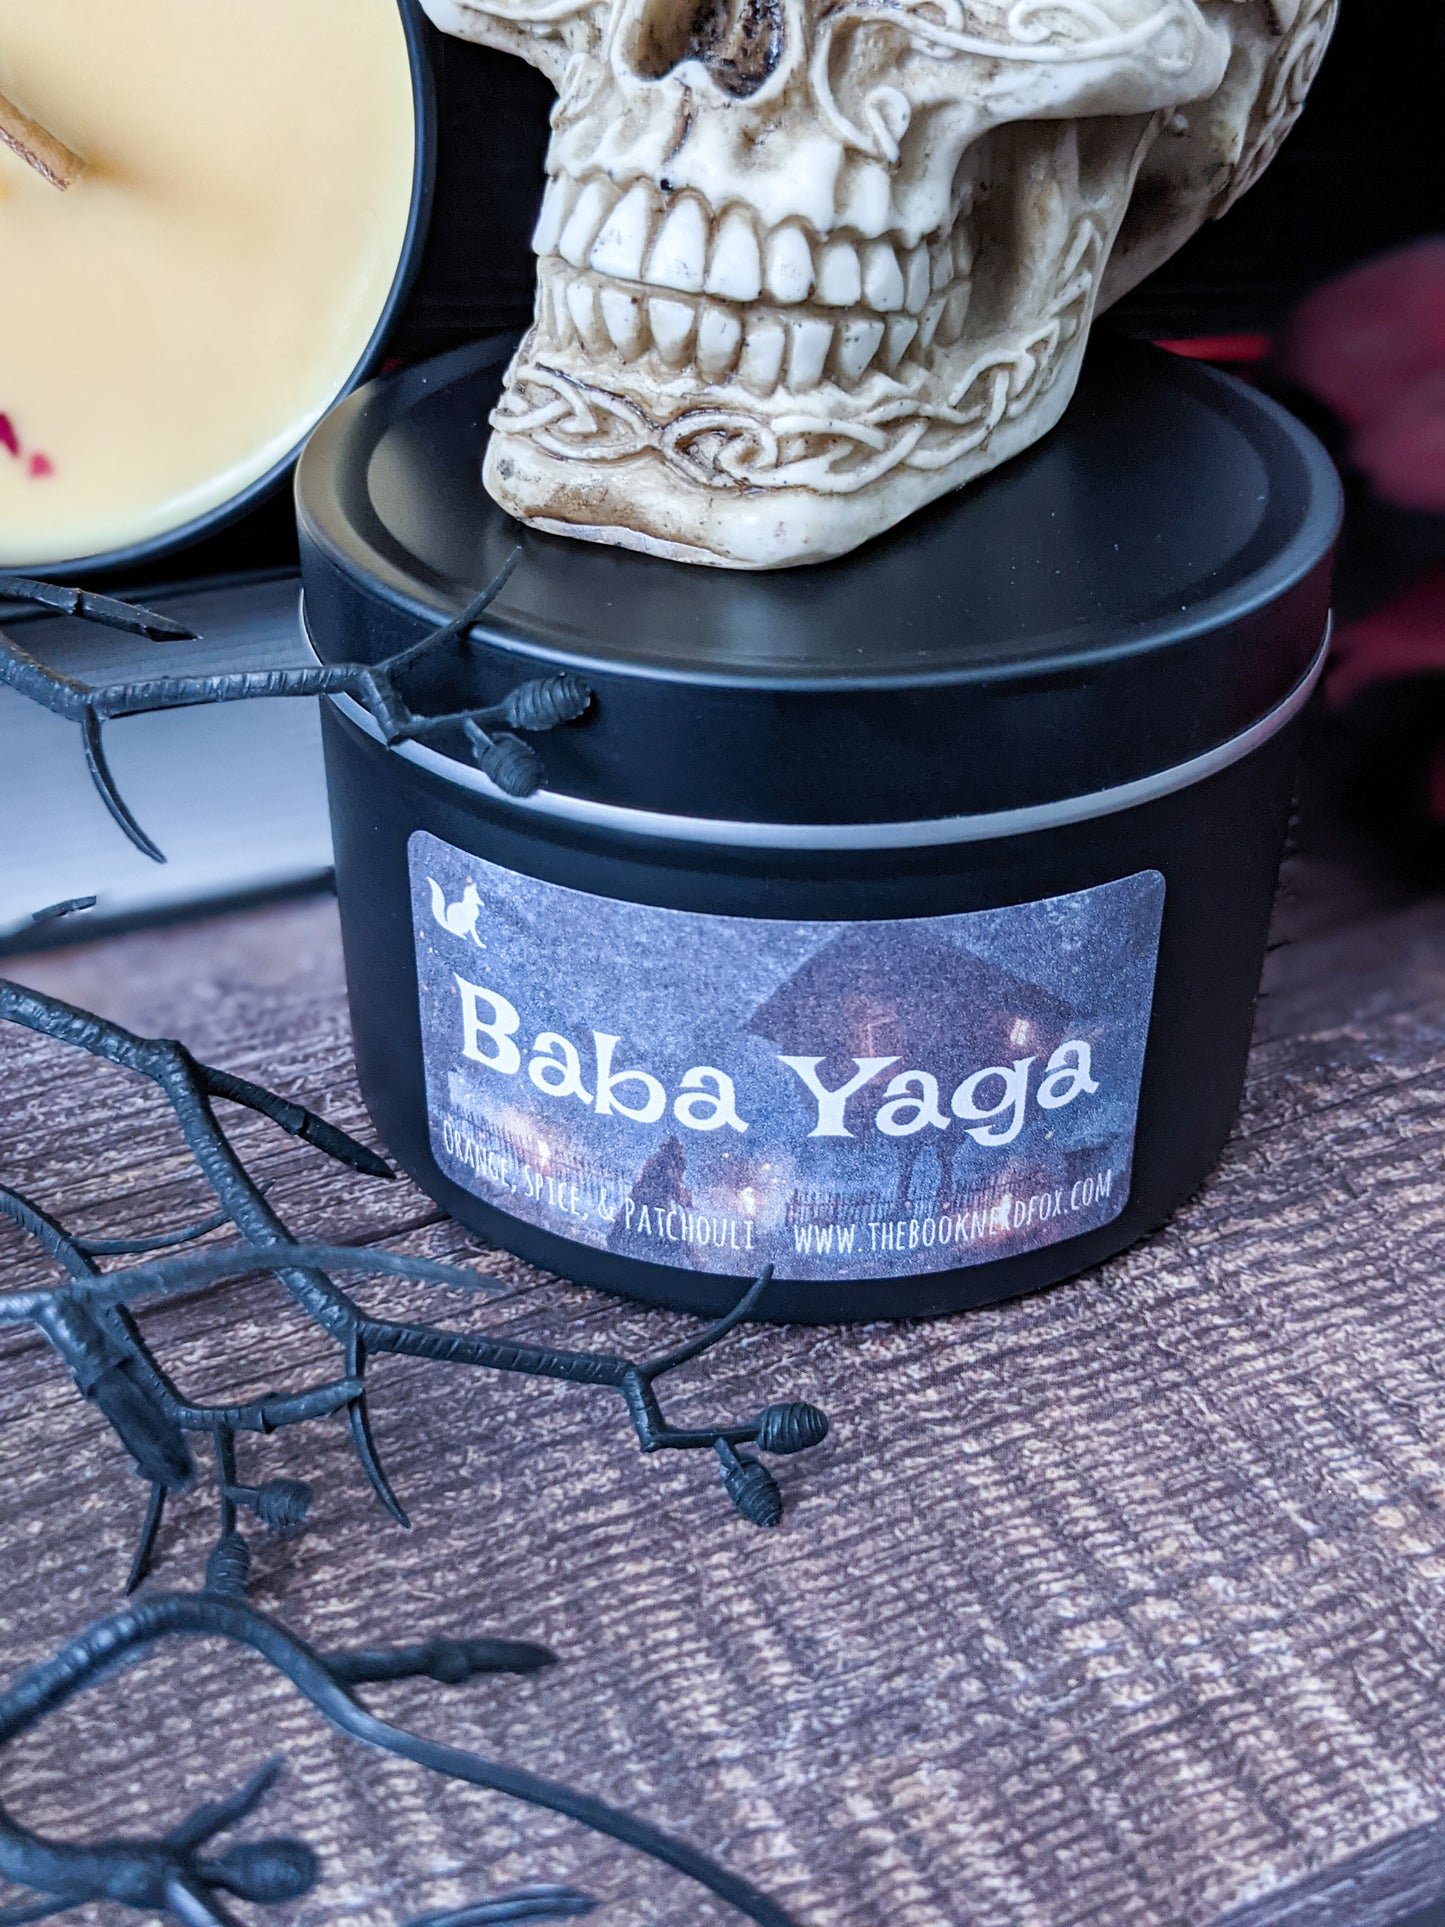 Baba Yaga - Orange, Spice, & Patchouli